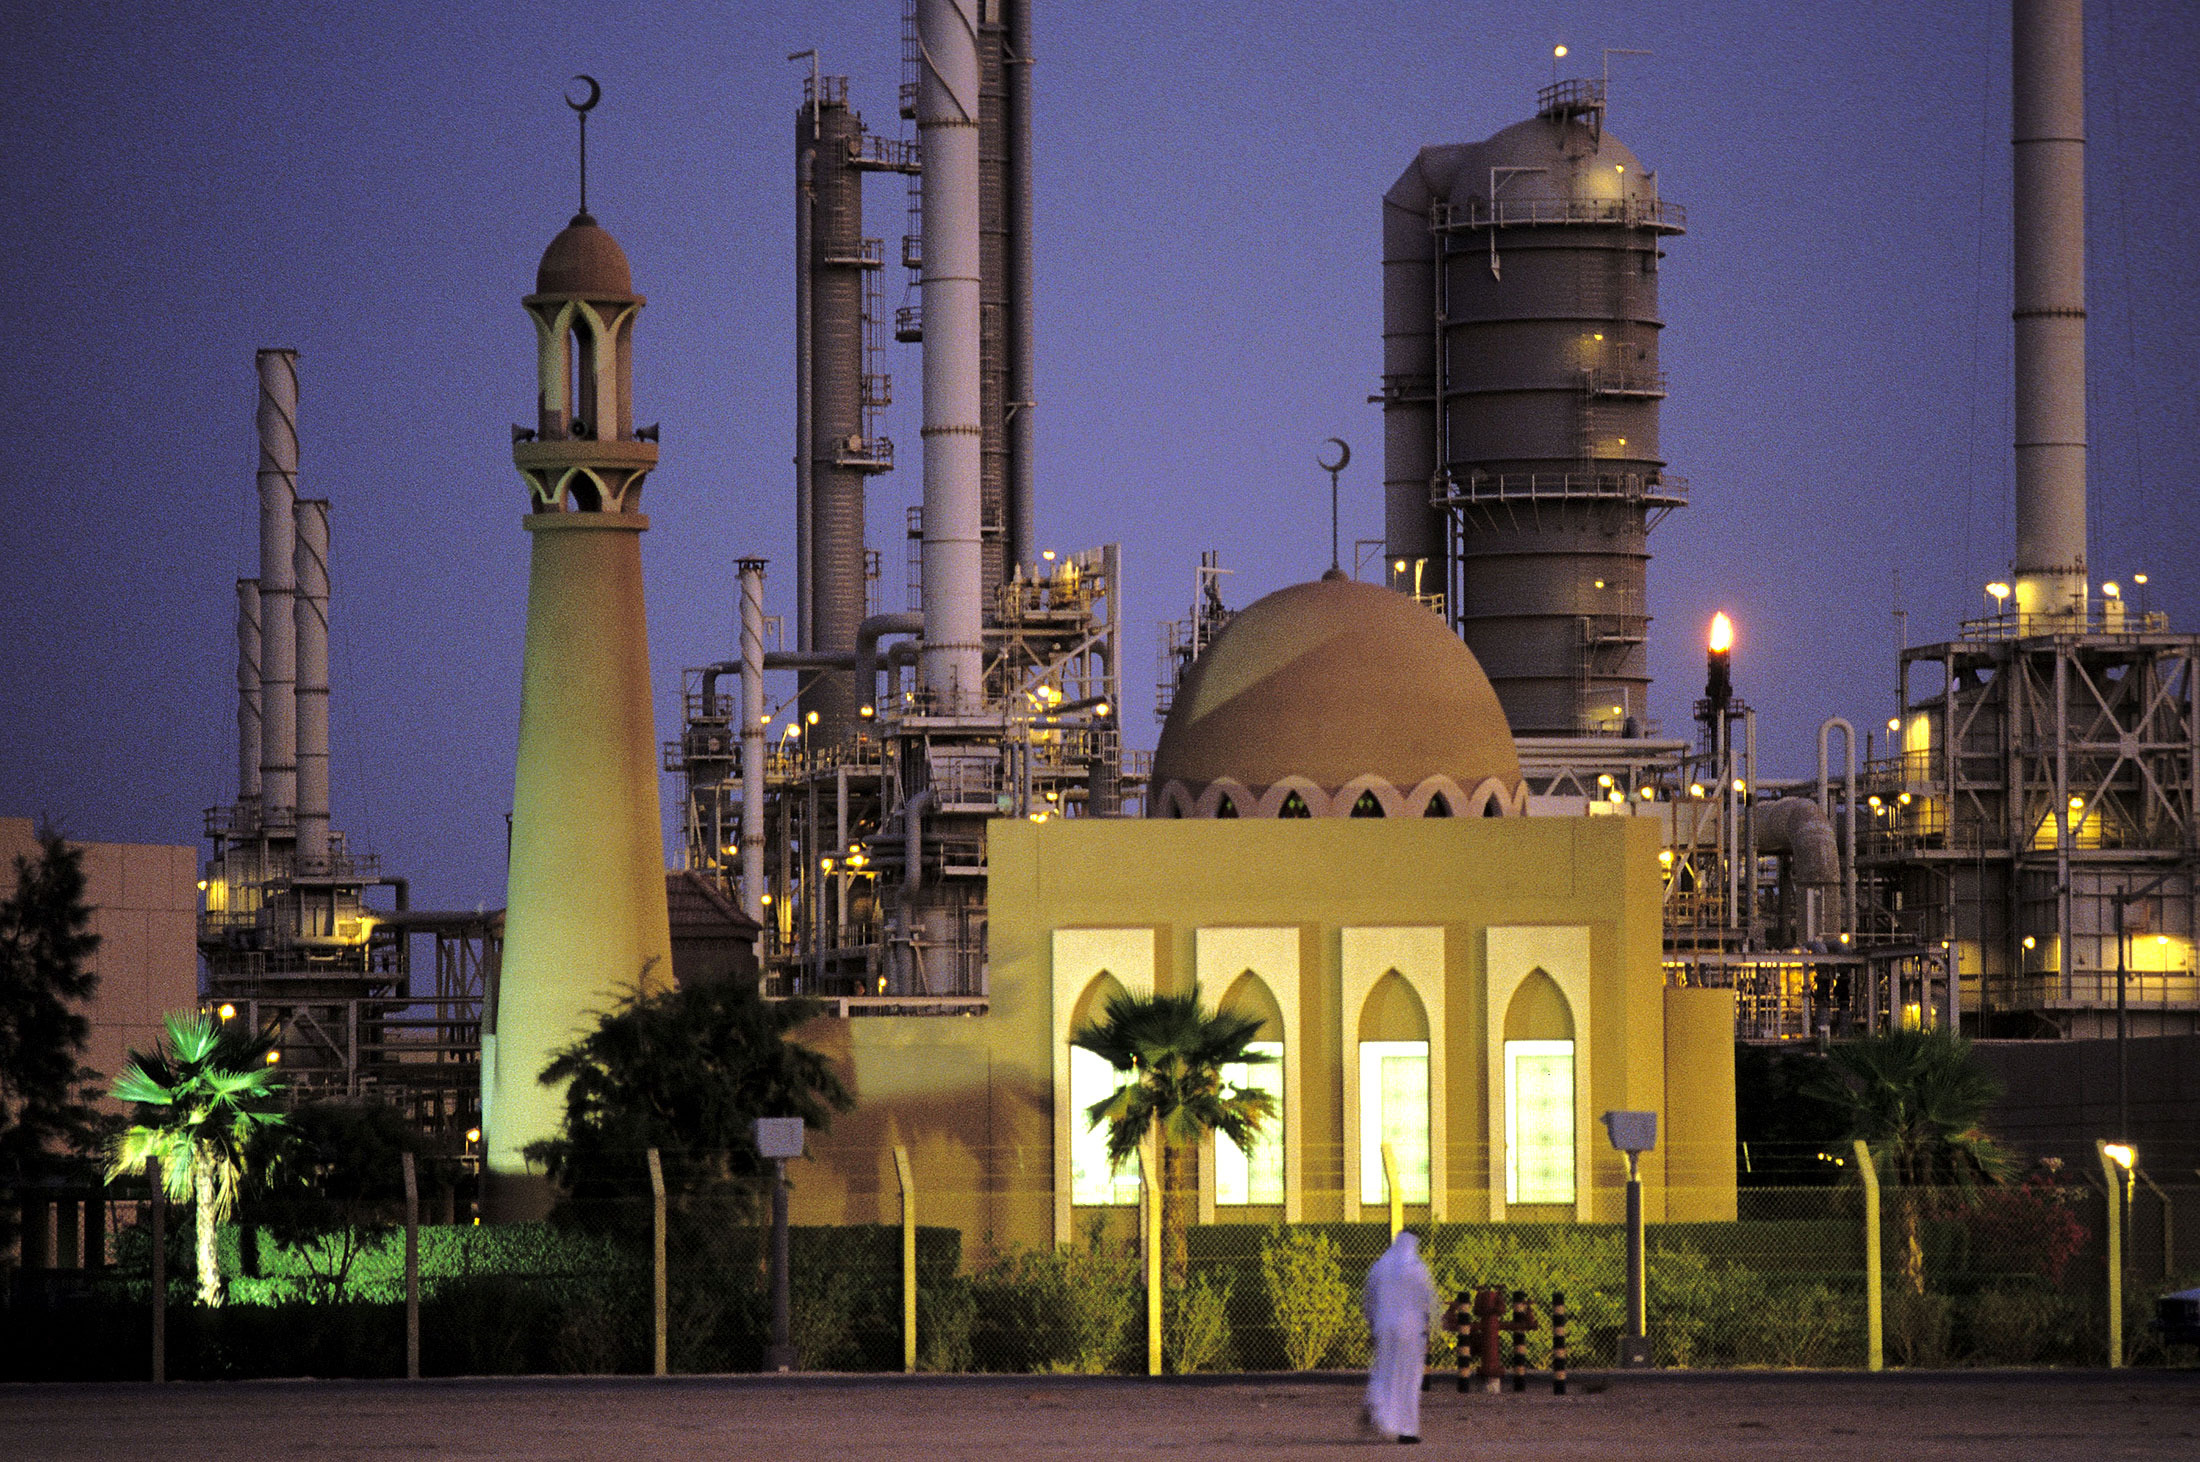 Saudi Arabia Ousts U.S. as Biggest Oil Producer, IEA Says